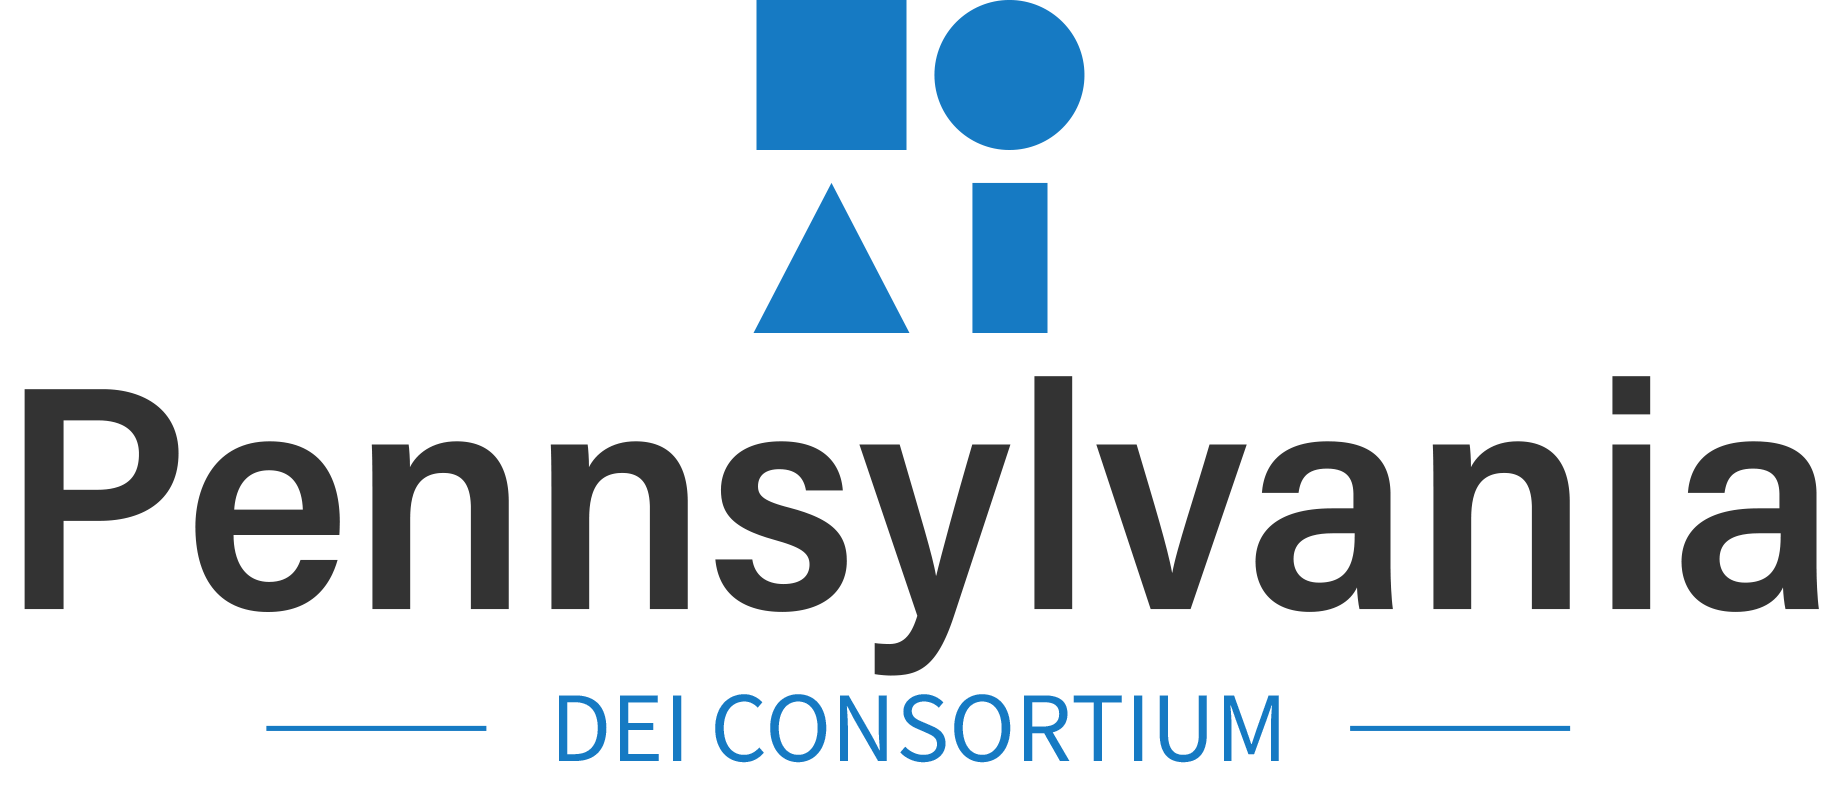 Pennsylvania DEI Consortium - PADEIC